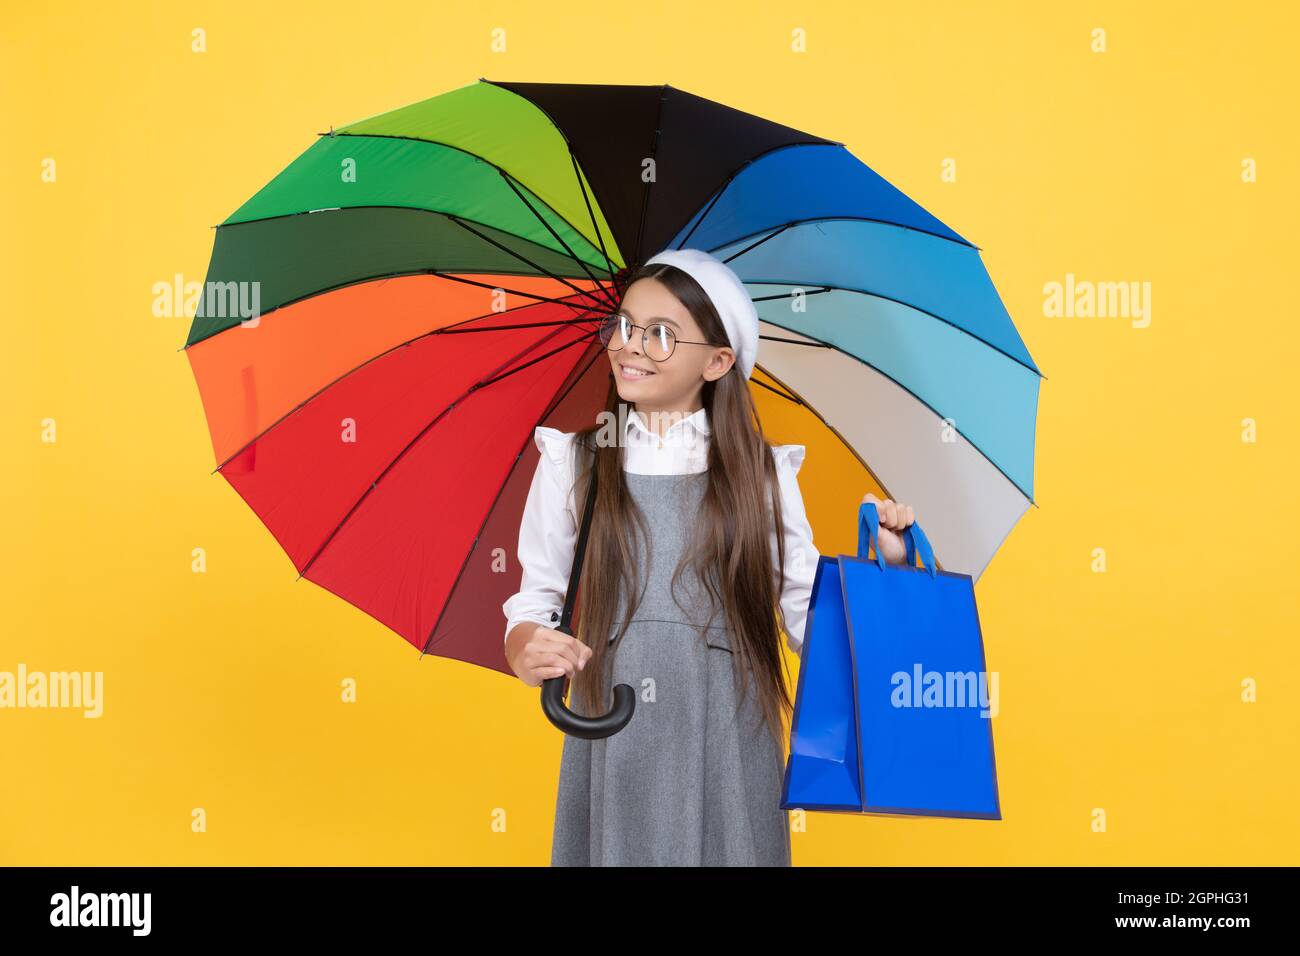 solde de saison. enfant de l'adolescence sous parasol coloré. béret d'enfant avec parapluie arc-en-ciel. saison d'automne. Banque D'Images